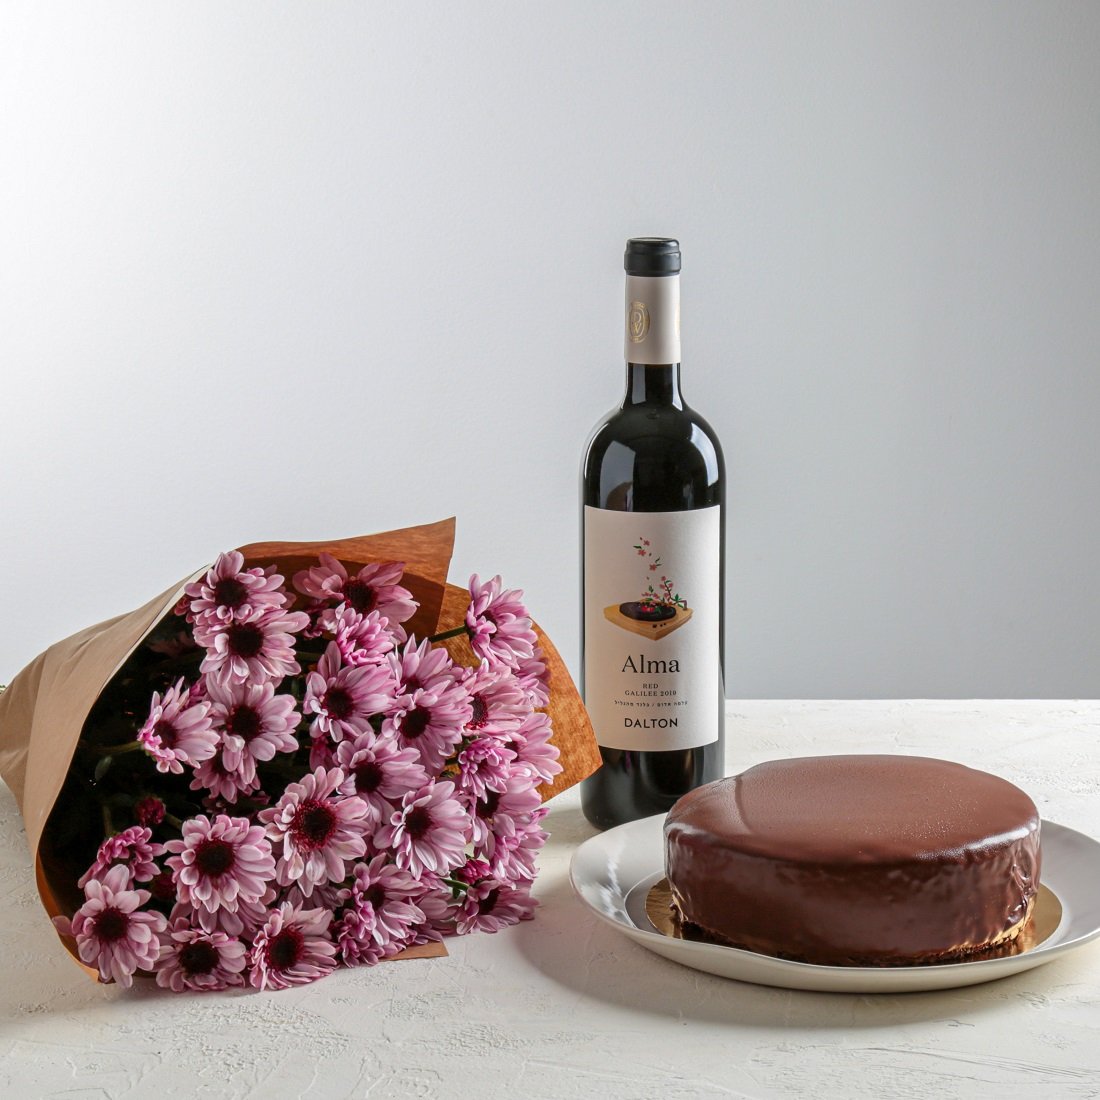 מארז פרחים, יין ועוגת שוקולד

288.00 ₪